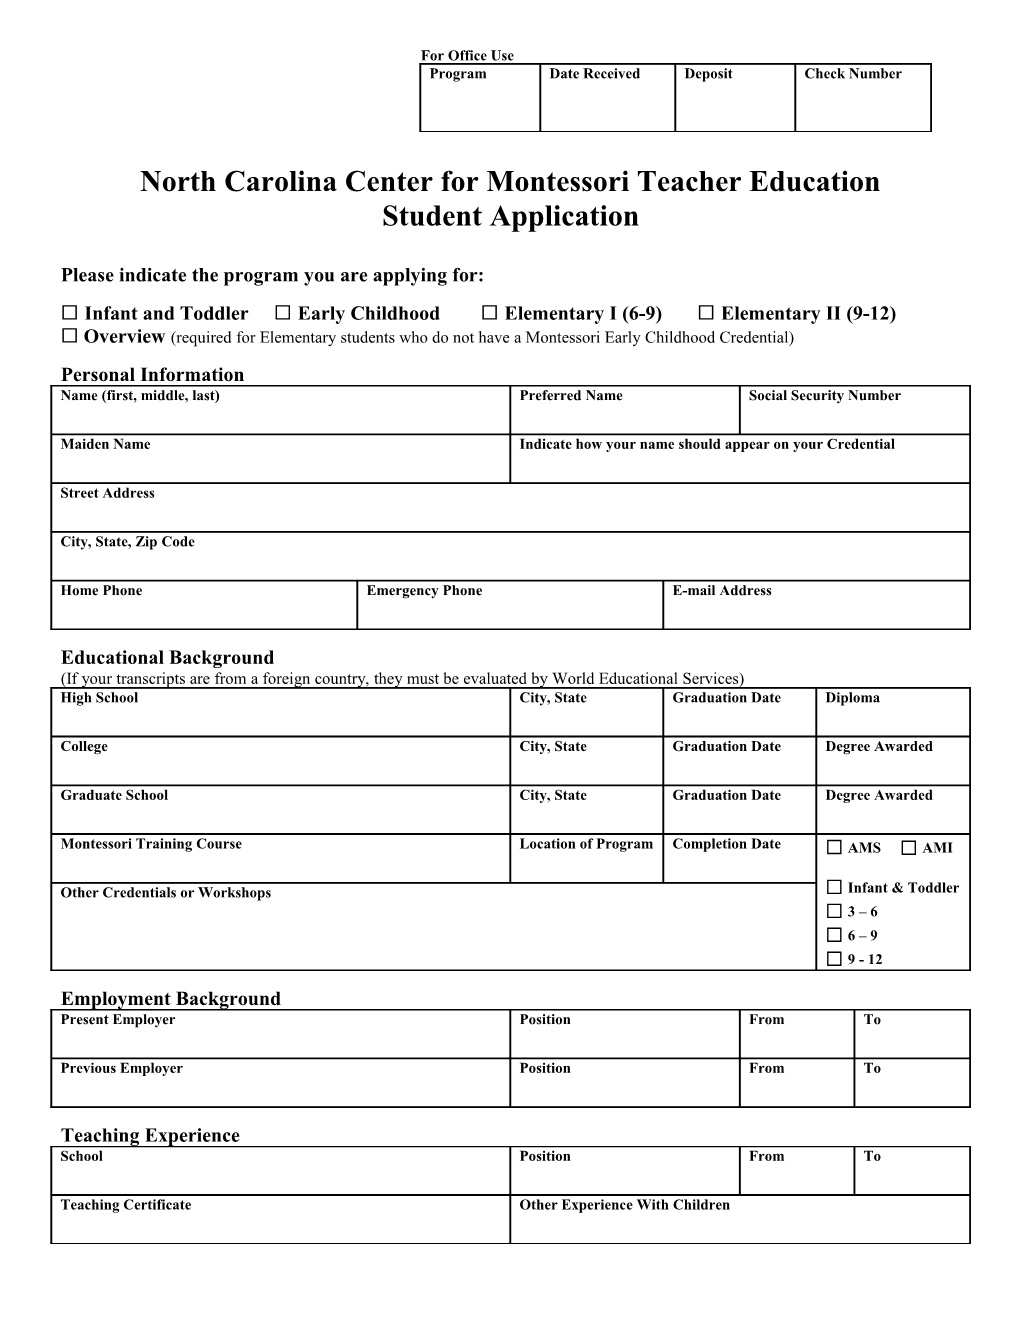 Center for Montessori Teacher Education, NC